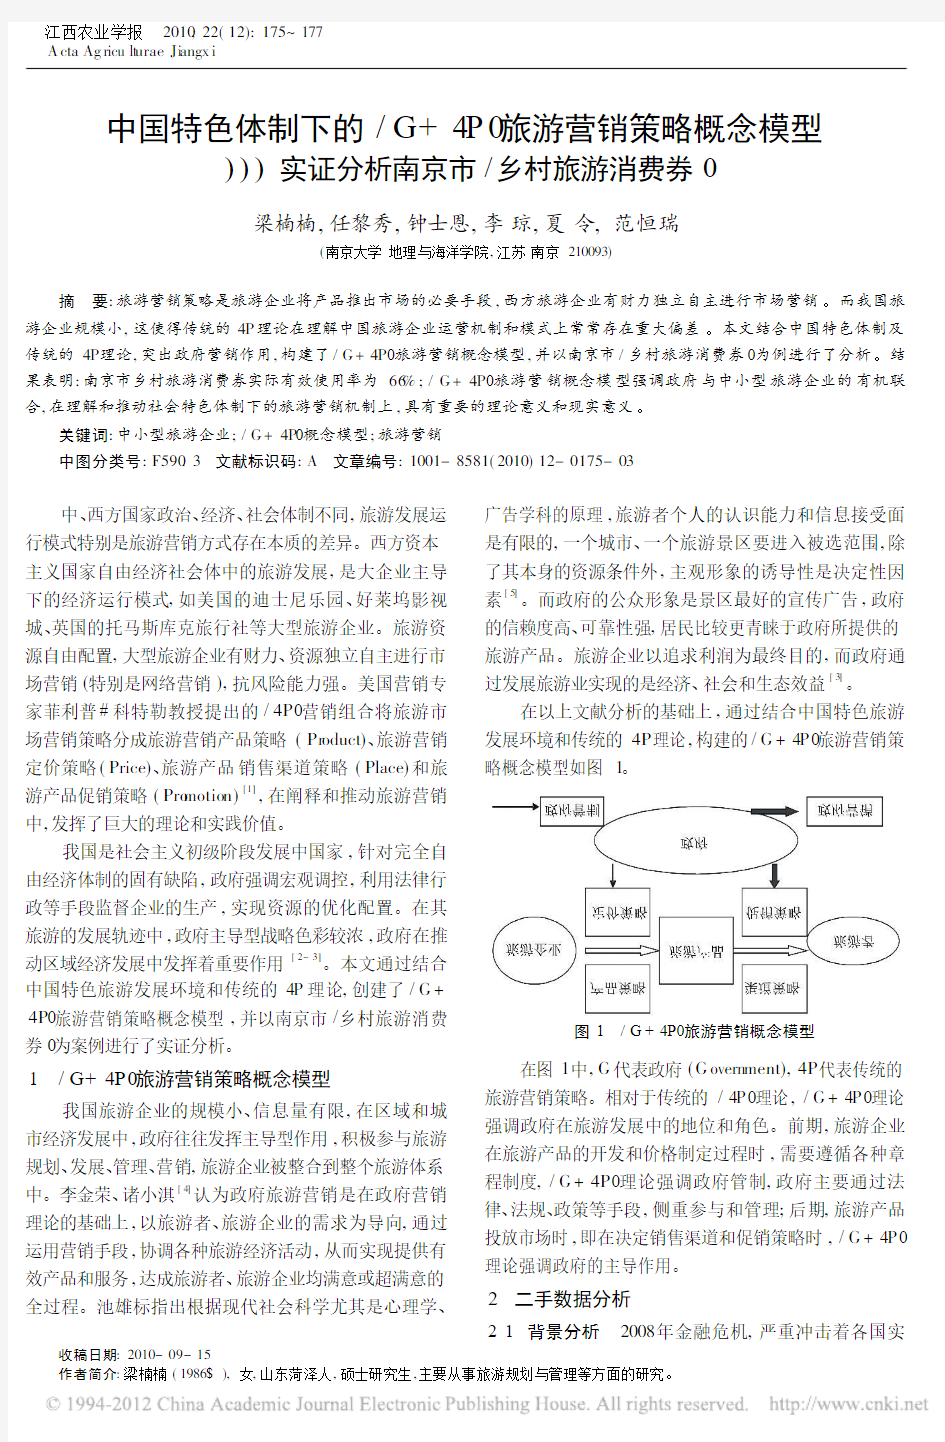 中国特色体制下的_G_4P_旅游营销策略概念模型_实证分析南京市_乡村旅游消费券